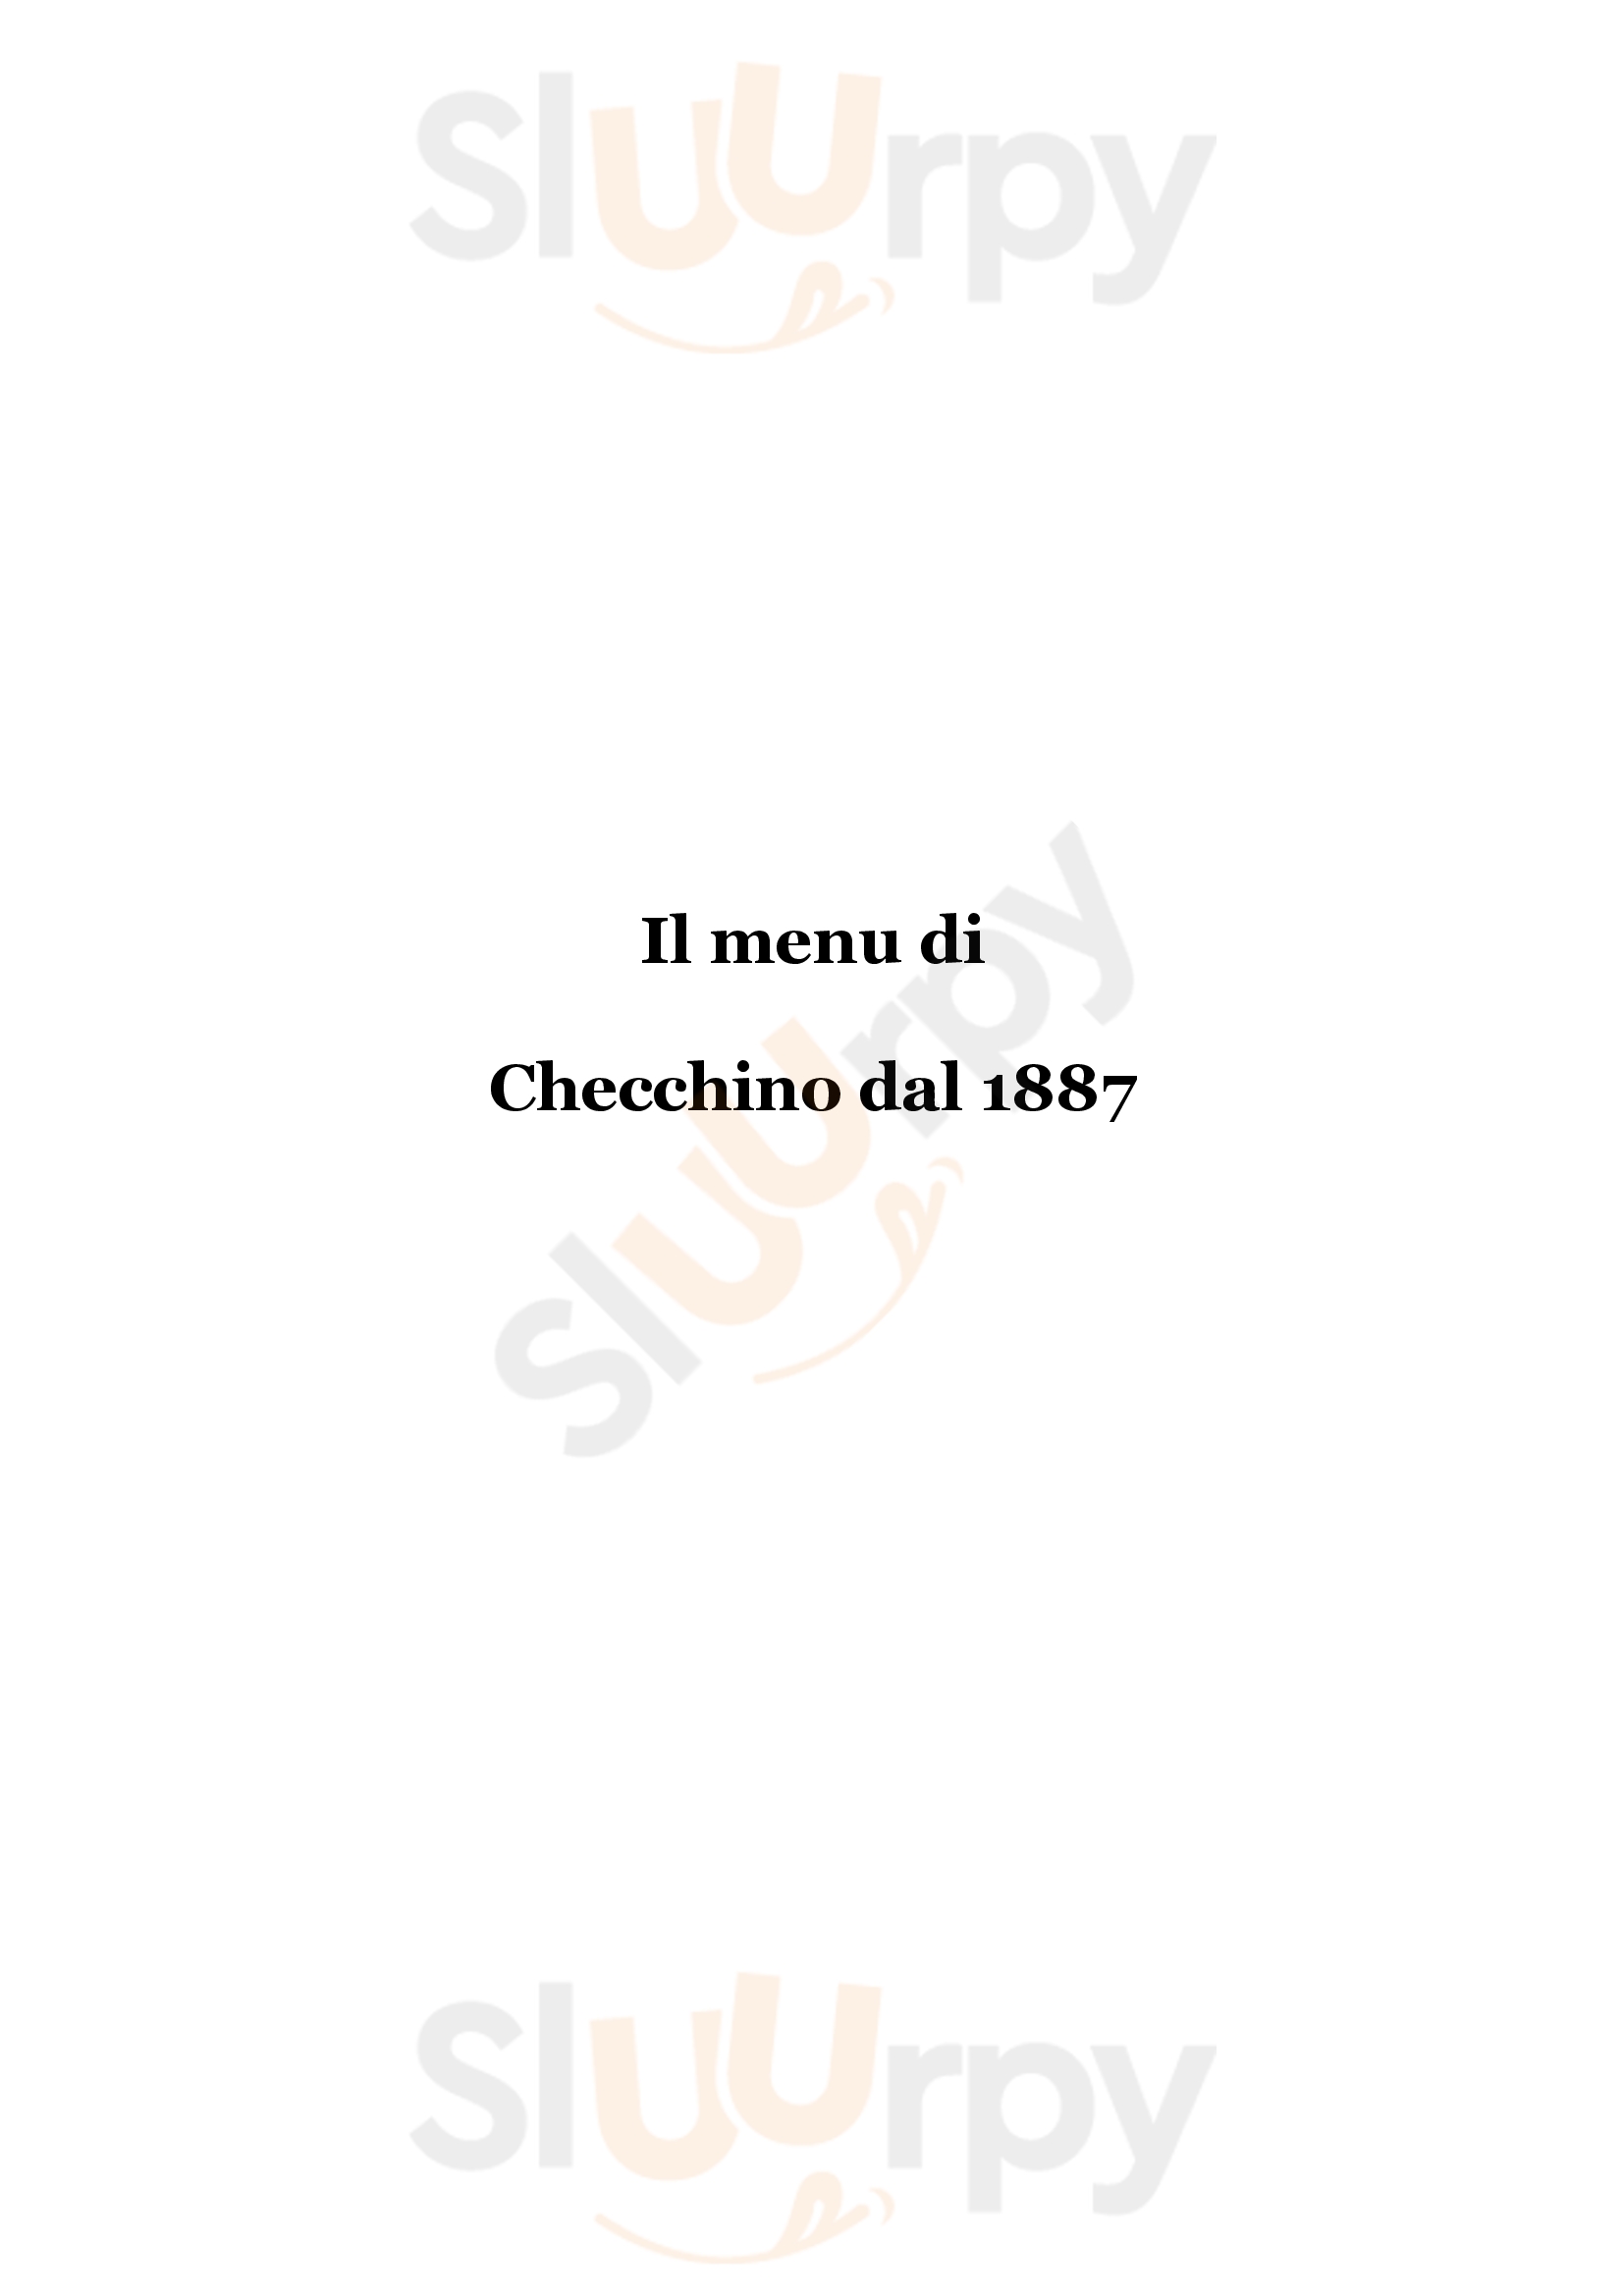 Checchino Dal 1887 Roma menù 1 pagina